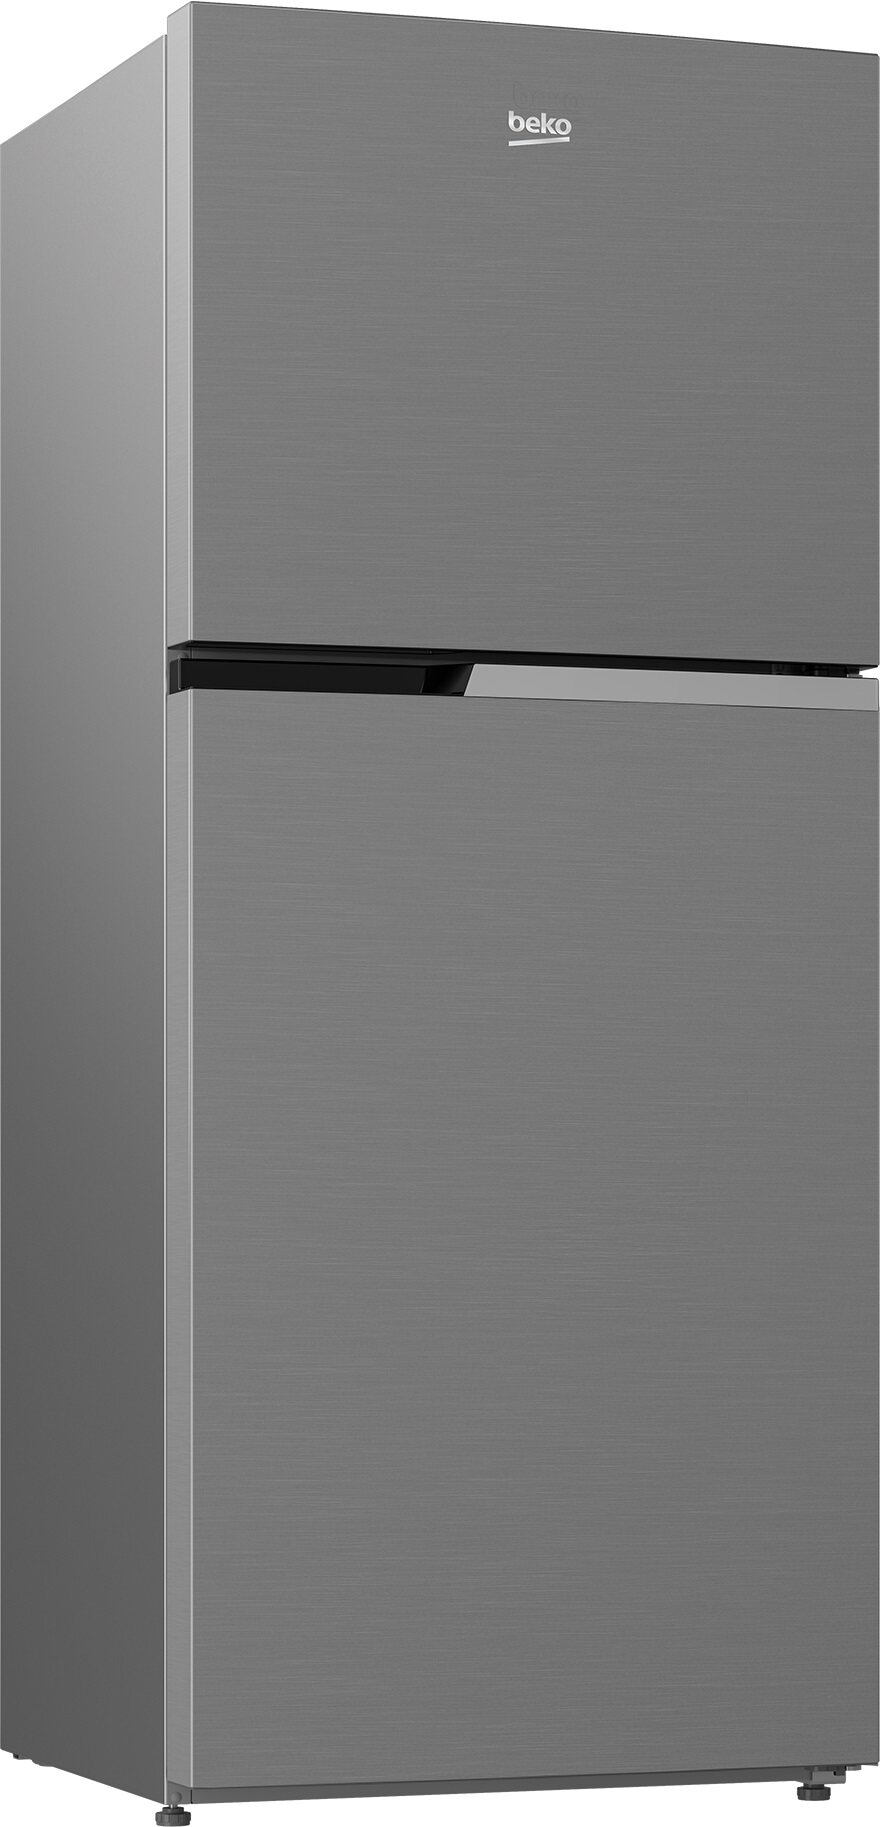 BEKO ตู้เย็น 2 ประตู รุ่น RDNT371I50S ขนาด 12 คิว HarvestFresh®